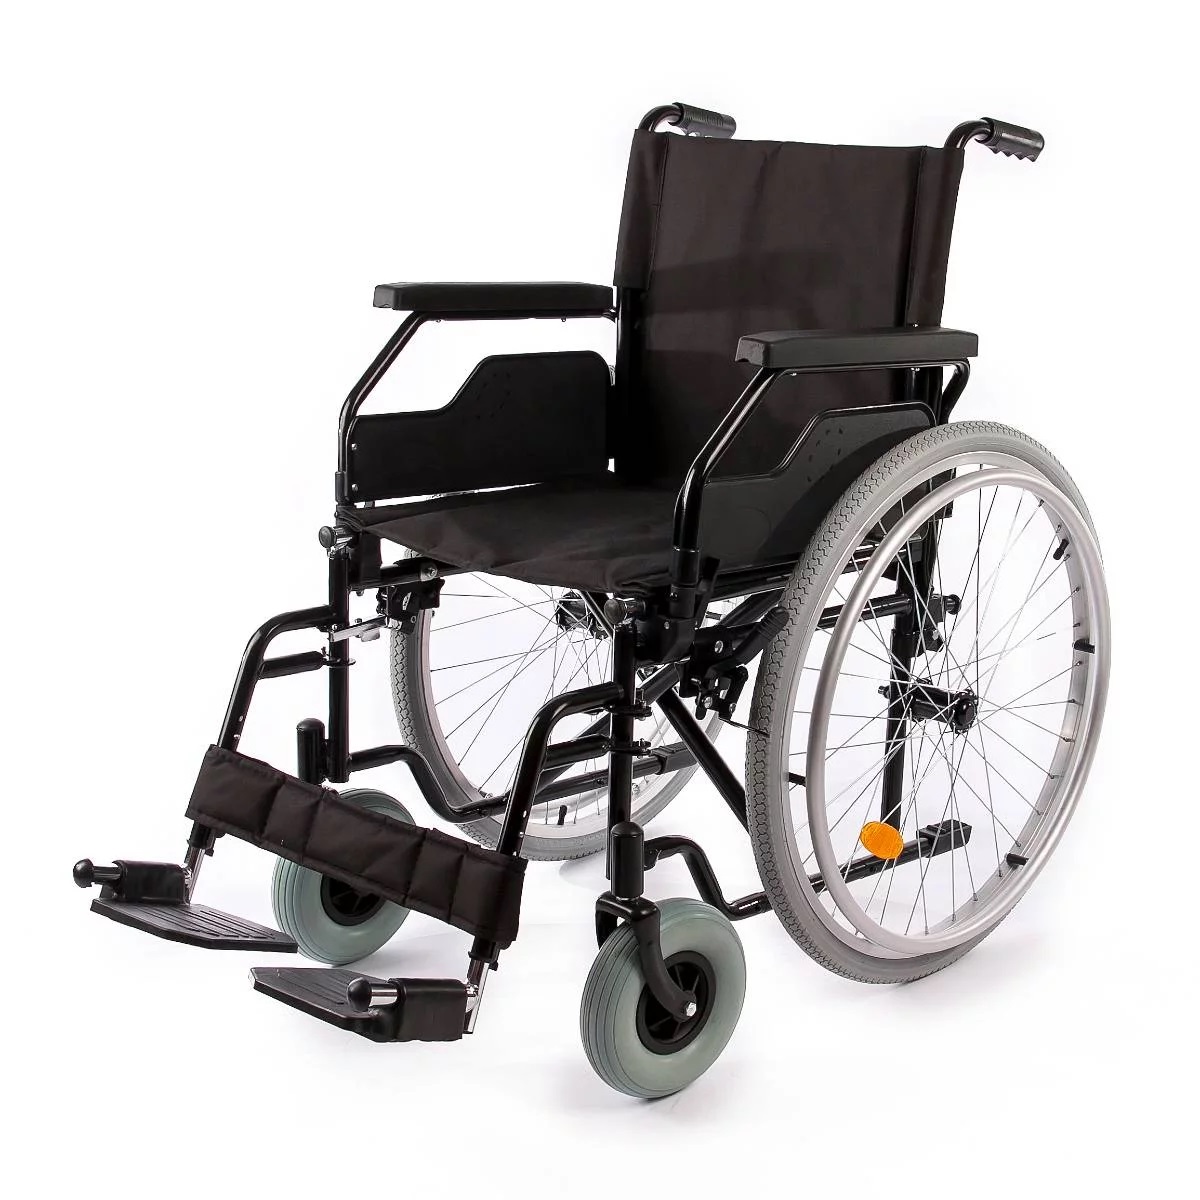 Spletni nakup medicinskih pripomočkov in invalidskega vozička